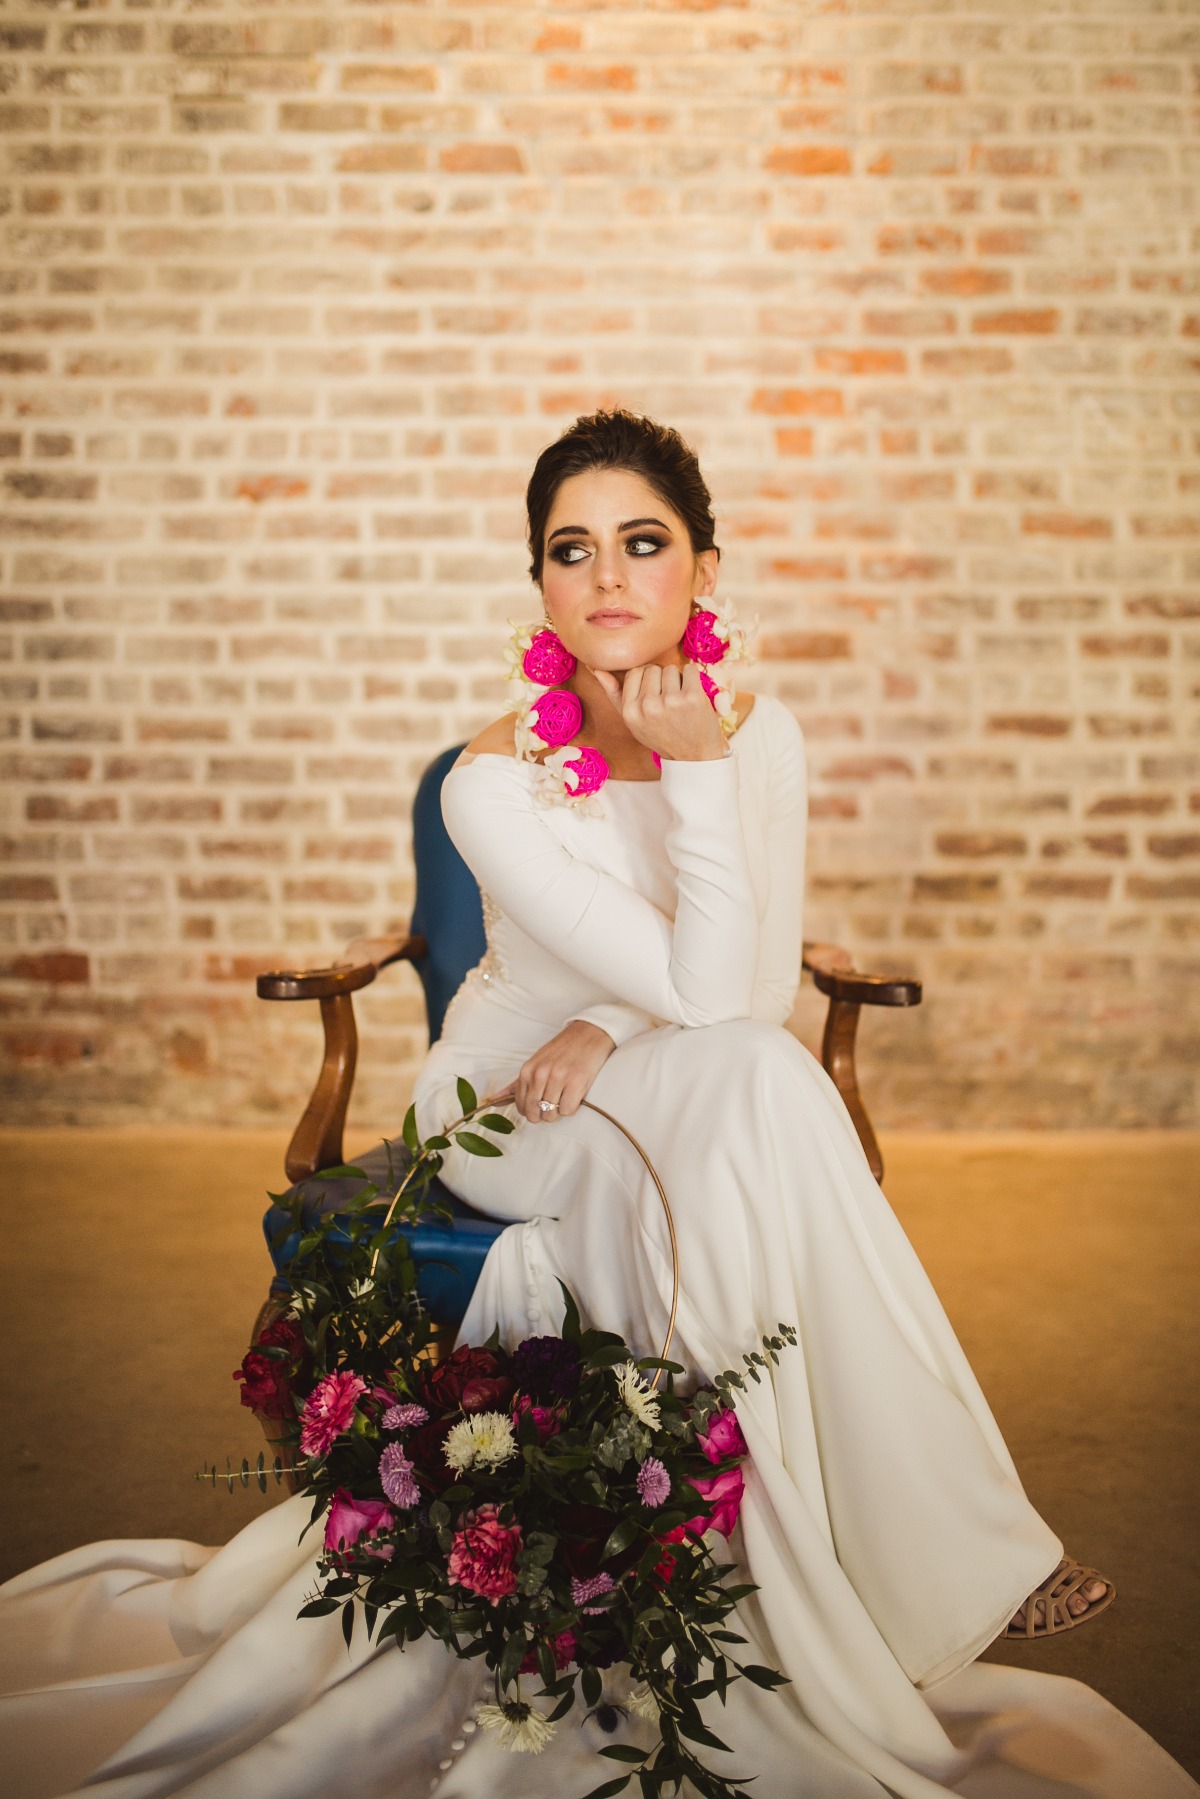 capulet-styled-wedding-photography-shoot